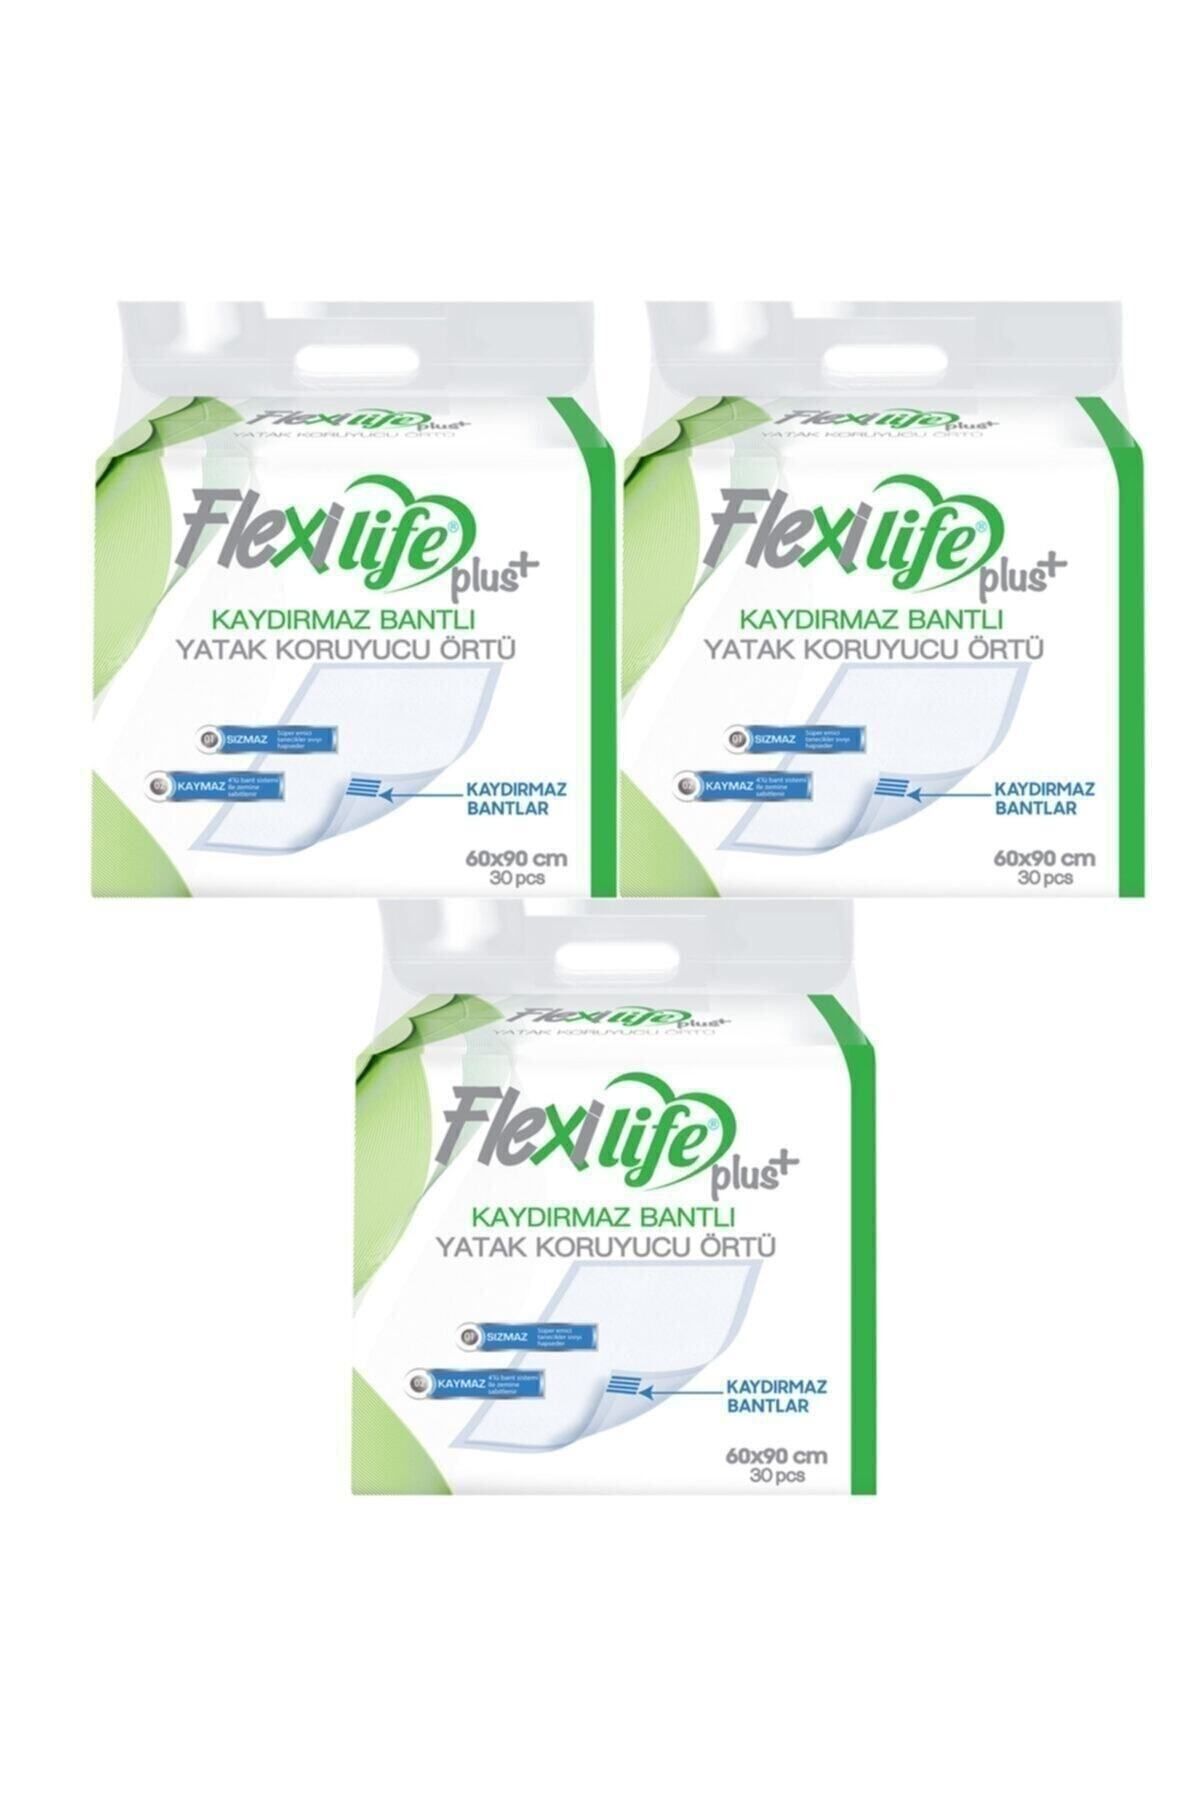 Flexi Life Flexilifeplus Hasta Altı Bezi Kaydırmaz Bantlı Yatak Koruyucu Örtü 60x90 Cm 30 Lu 3 Paket